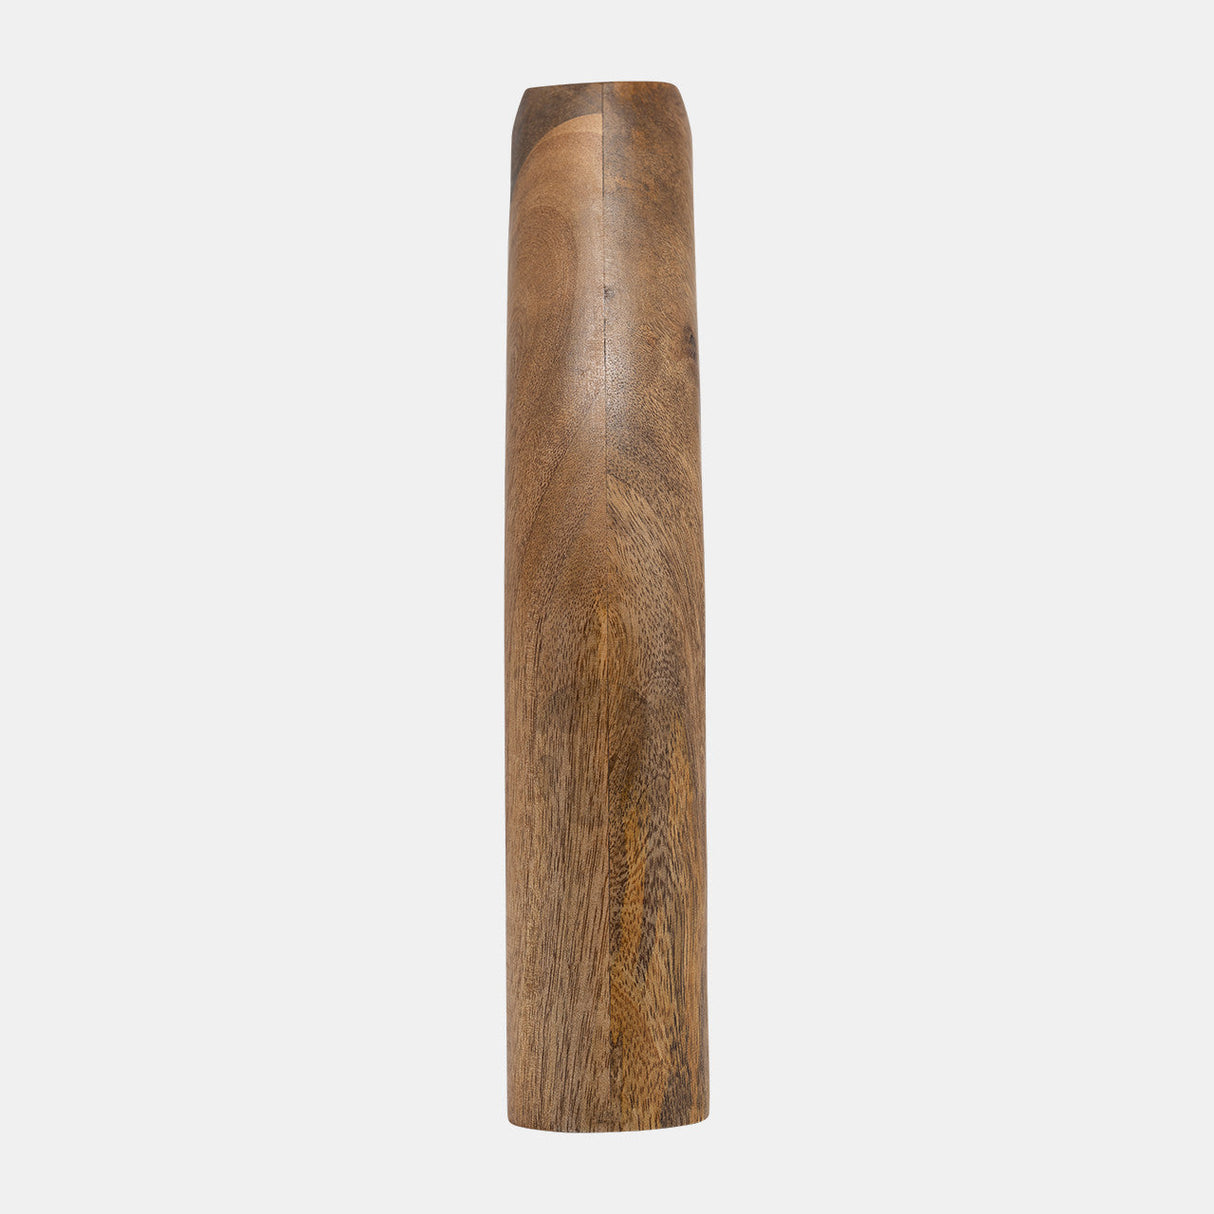 Wood, 11"h Tapered Vase, Brown